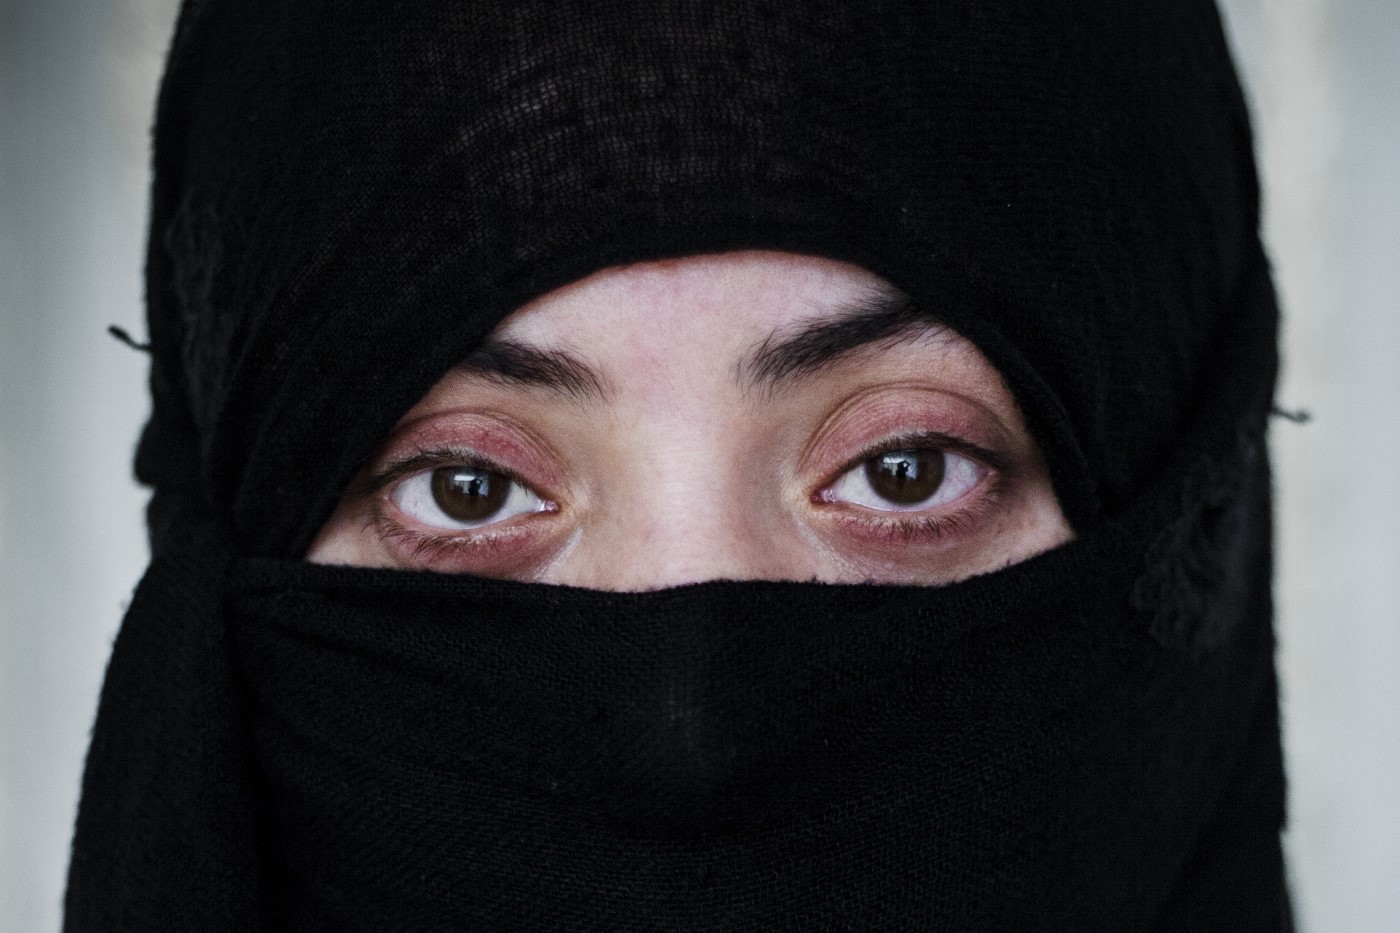 Rwayda Elias K. (26). Dona Yazidí. Segrestada amb tota la seva família per l’ISIS a Shangal el 2014. Va ser esclava amb el seu fill de 6 mesos d’un primer home a Mossul. Durant el seu captiveri, que va durar un mes, va estar tancada amb clau en una habitació. Elias va estar sota el control de l’ISIS 2 anys. Va ser venuda un total de quatre vegades i va ser violada per molts més membres del Daesh. L'últim home la va comprar a Raqqa. Va estar 11 mesos fins que el primer ministre del Kurdistan va pagar 30.000 dòlars de rescat. Ara es refugia a Duhok (2017) des de fa un any i tres mesos. No sap res de la seva família. No rep atenció psicològica, ja que no té diners per pagar-ho. Textualment diu "el Daesh ha matat la meva vida". Duhok, Kurdistan, Iraq. 4 de juliol de 2017